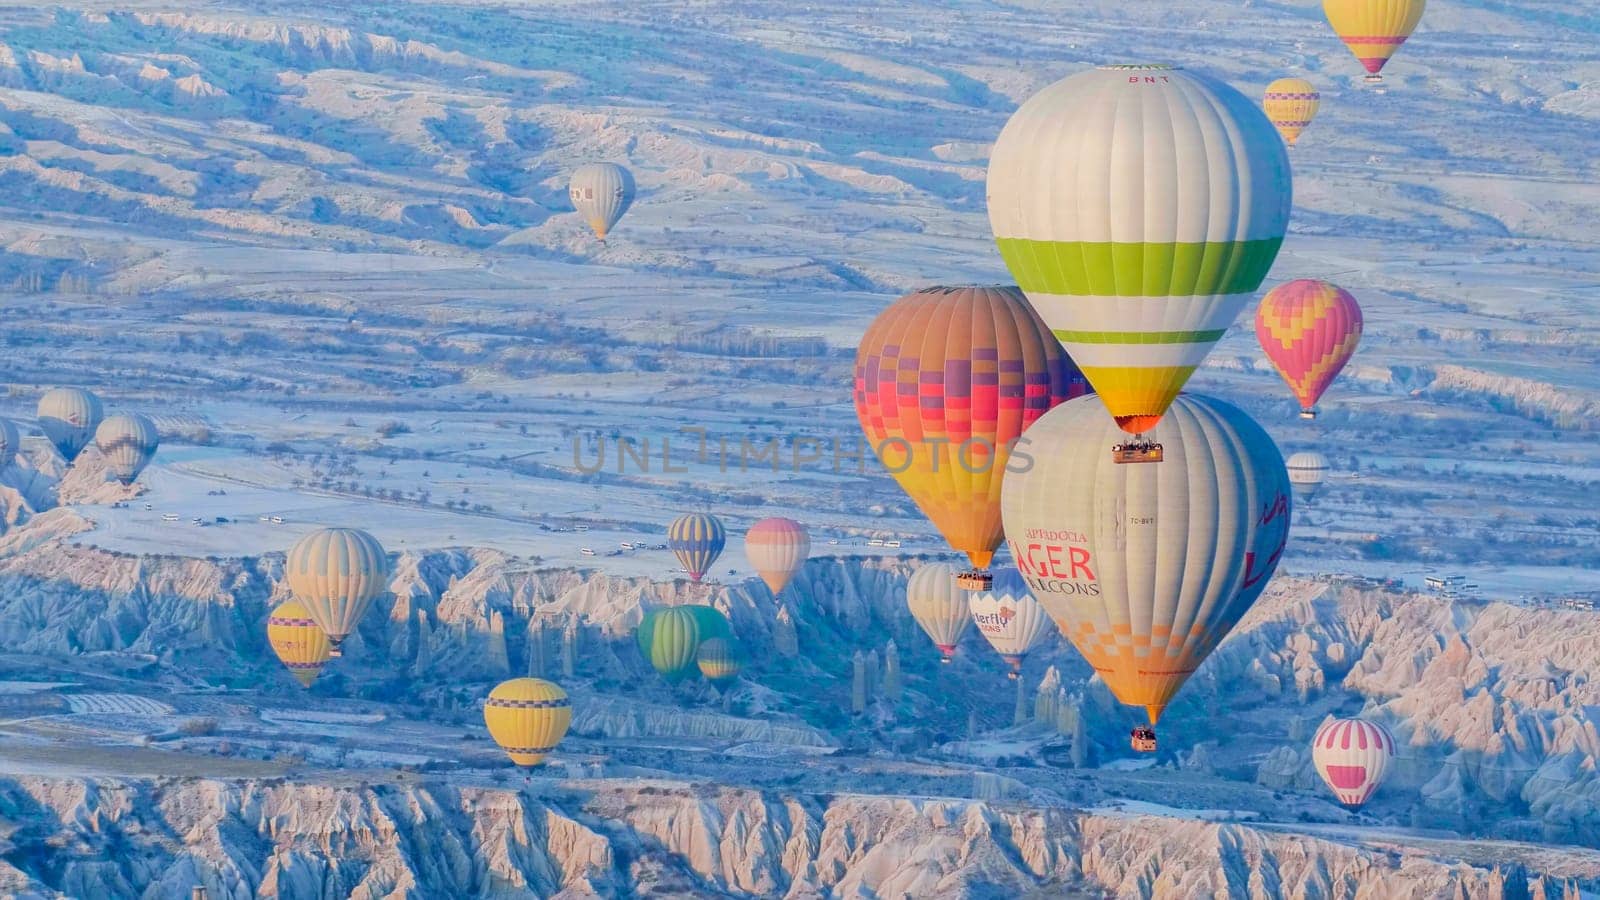 Cappadocia, Turkey - January 6, 2020: Color balloons in the sunrise sky. Cappadocia, Turkey. by DovidPro